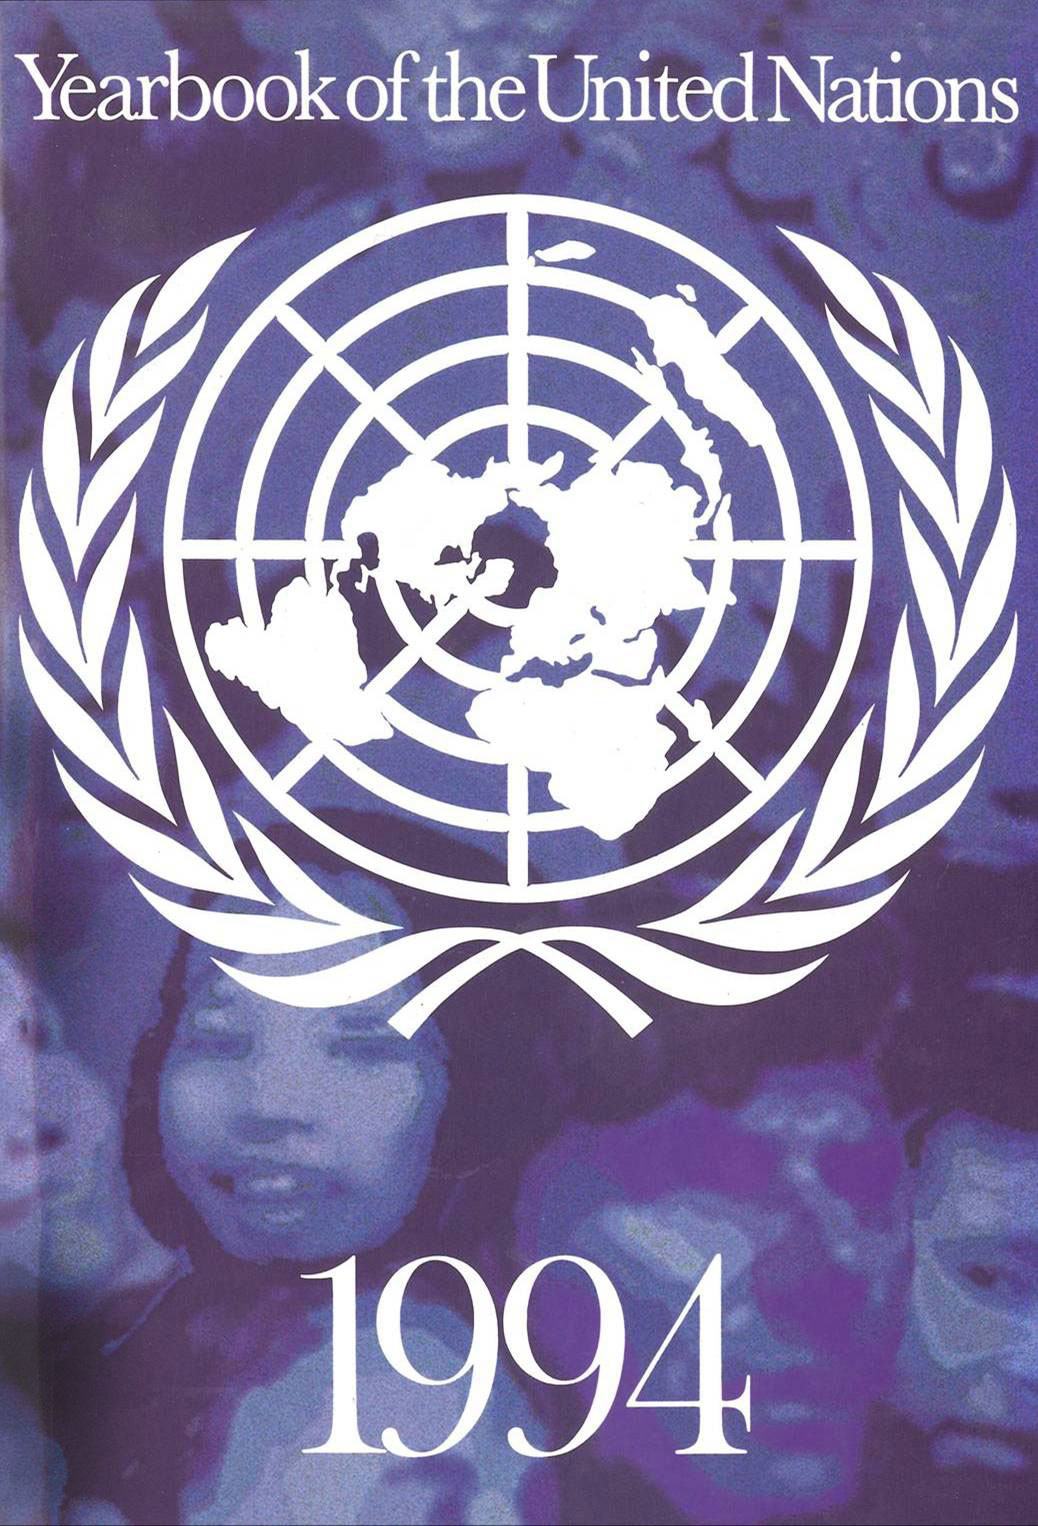 image of International Telecommunication Union (ITU)